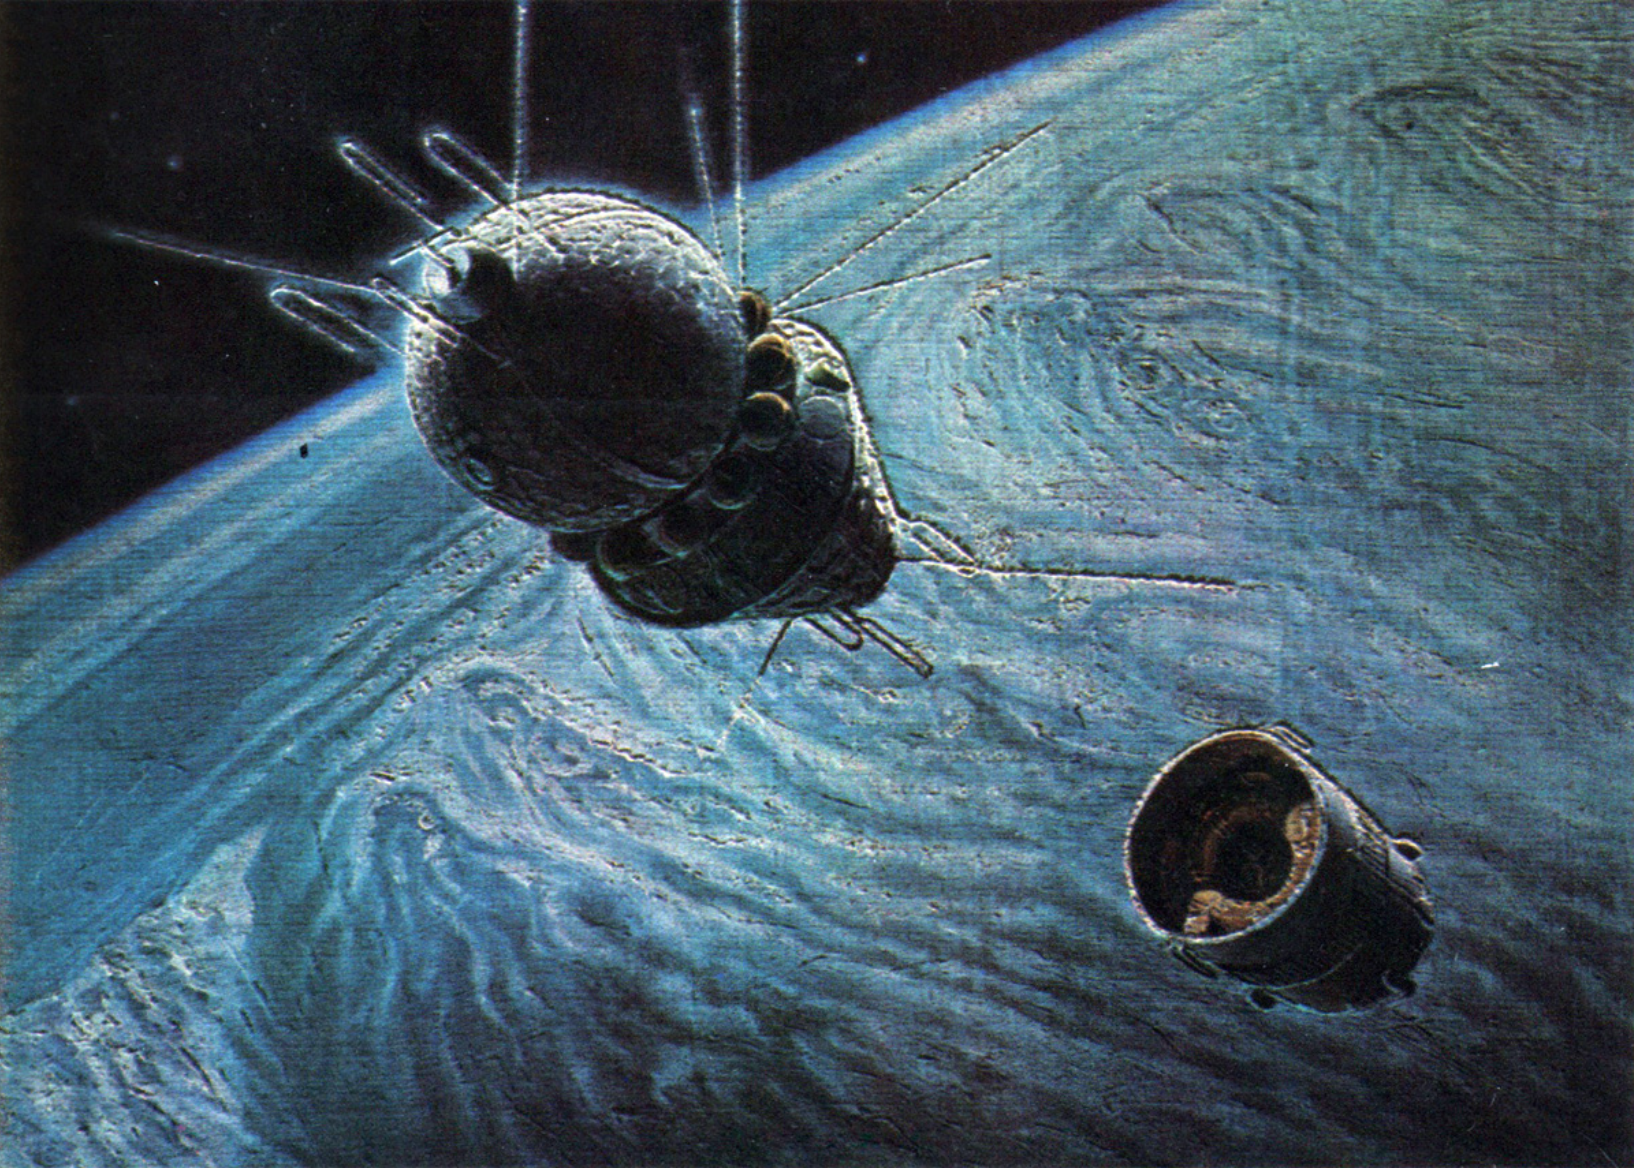 Околоземная орбита гагарин. Космический корабль Гагарина Восток 1. А.Леонов, а.Соколов "на спутнике Юпитера". Космический корабль Восток картина Леонов.